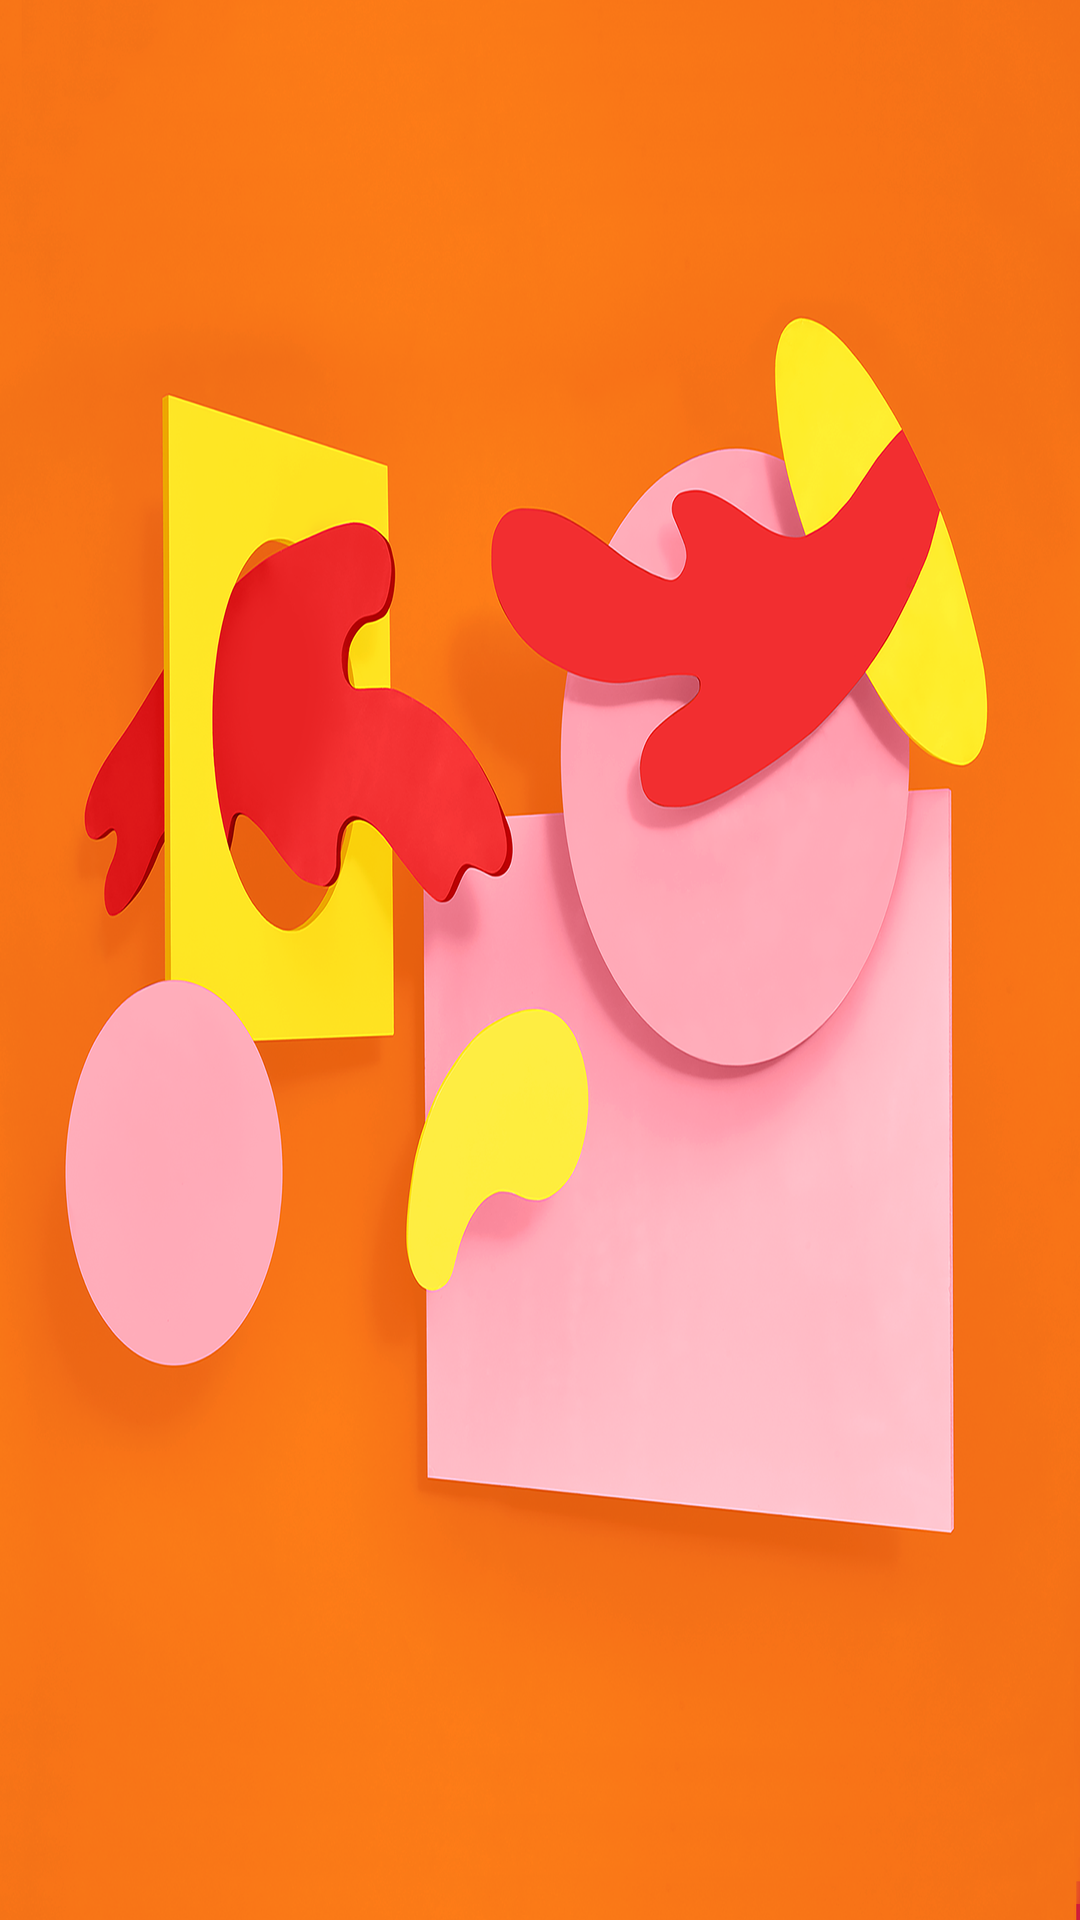 fondos de pantalla oficiales de android,rosado,amarillo,naranja,papel de construcción,ilustración